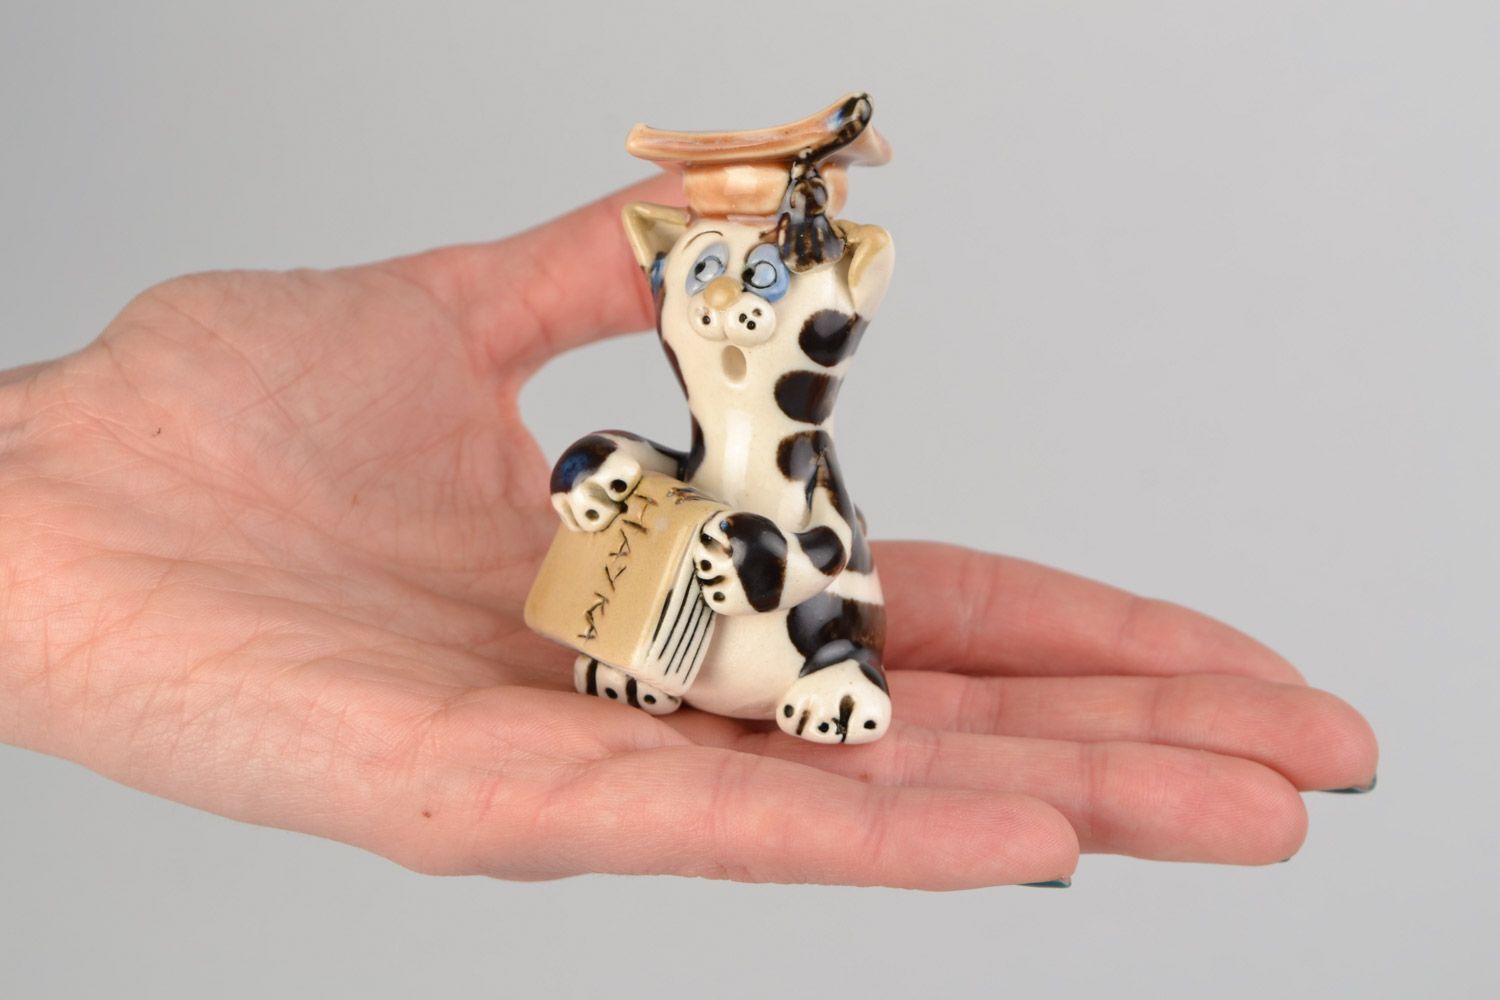 Авторская расписанная глазурью глиняная фигурка кота ученого ручной работы фото 2